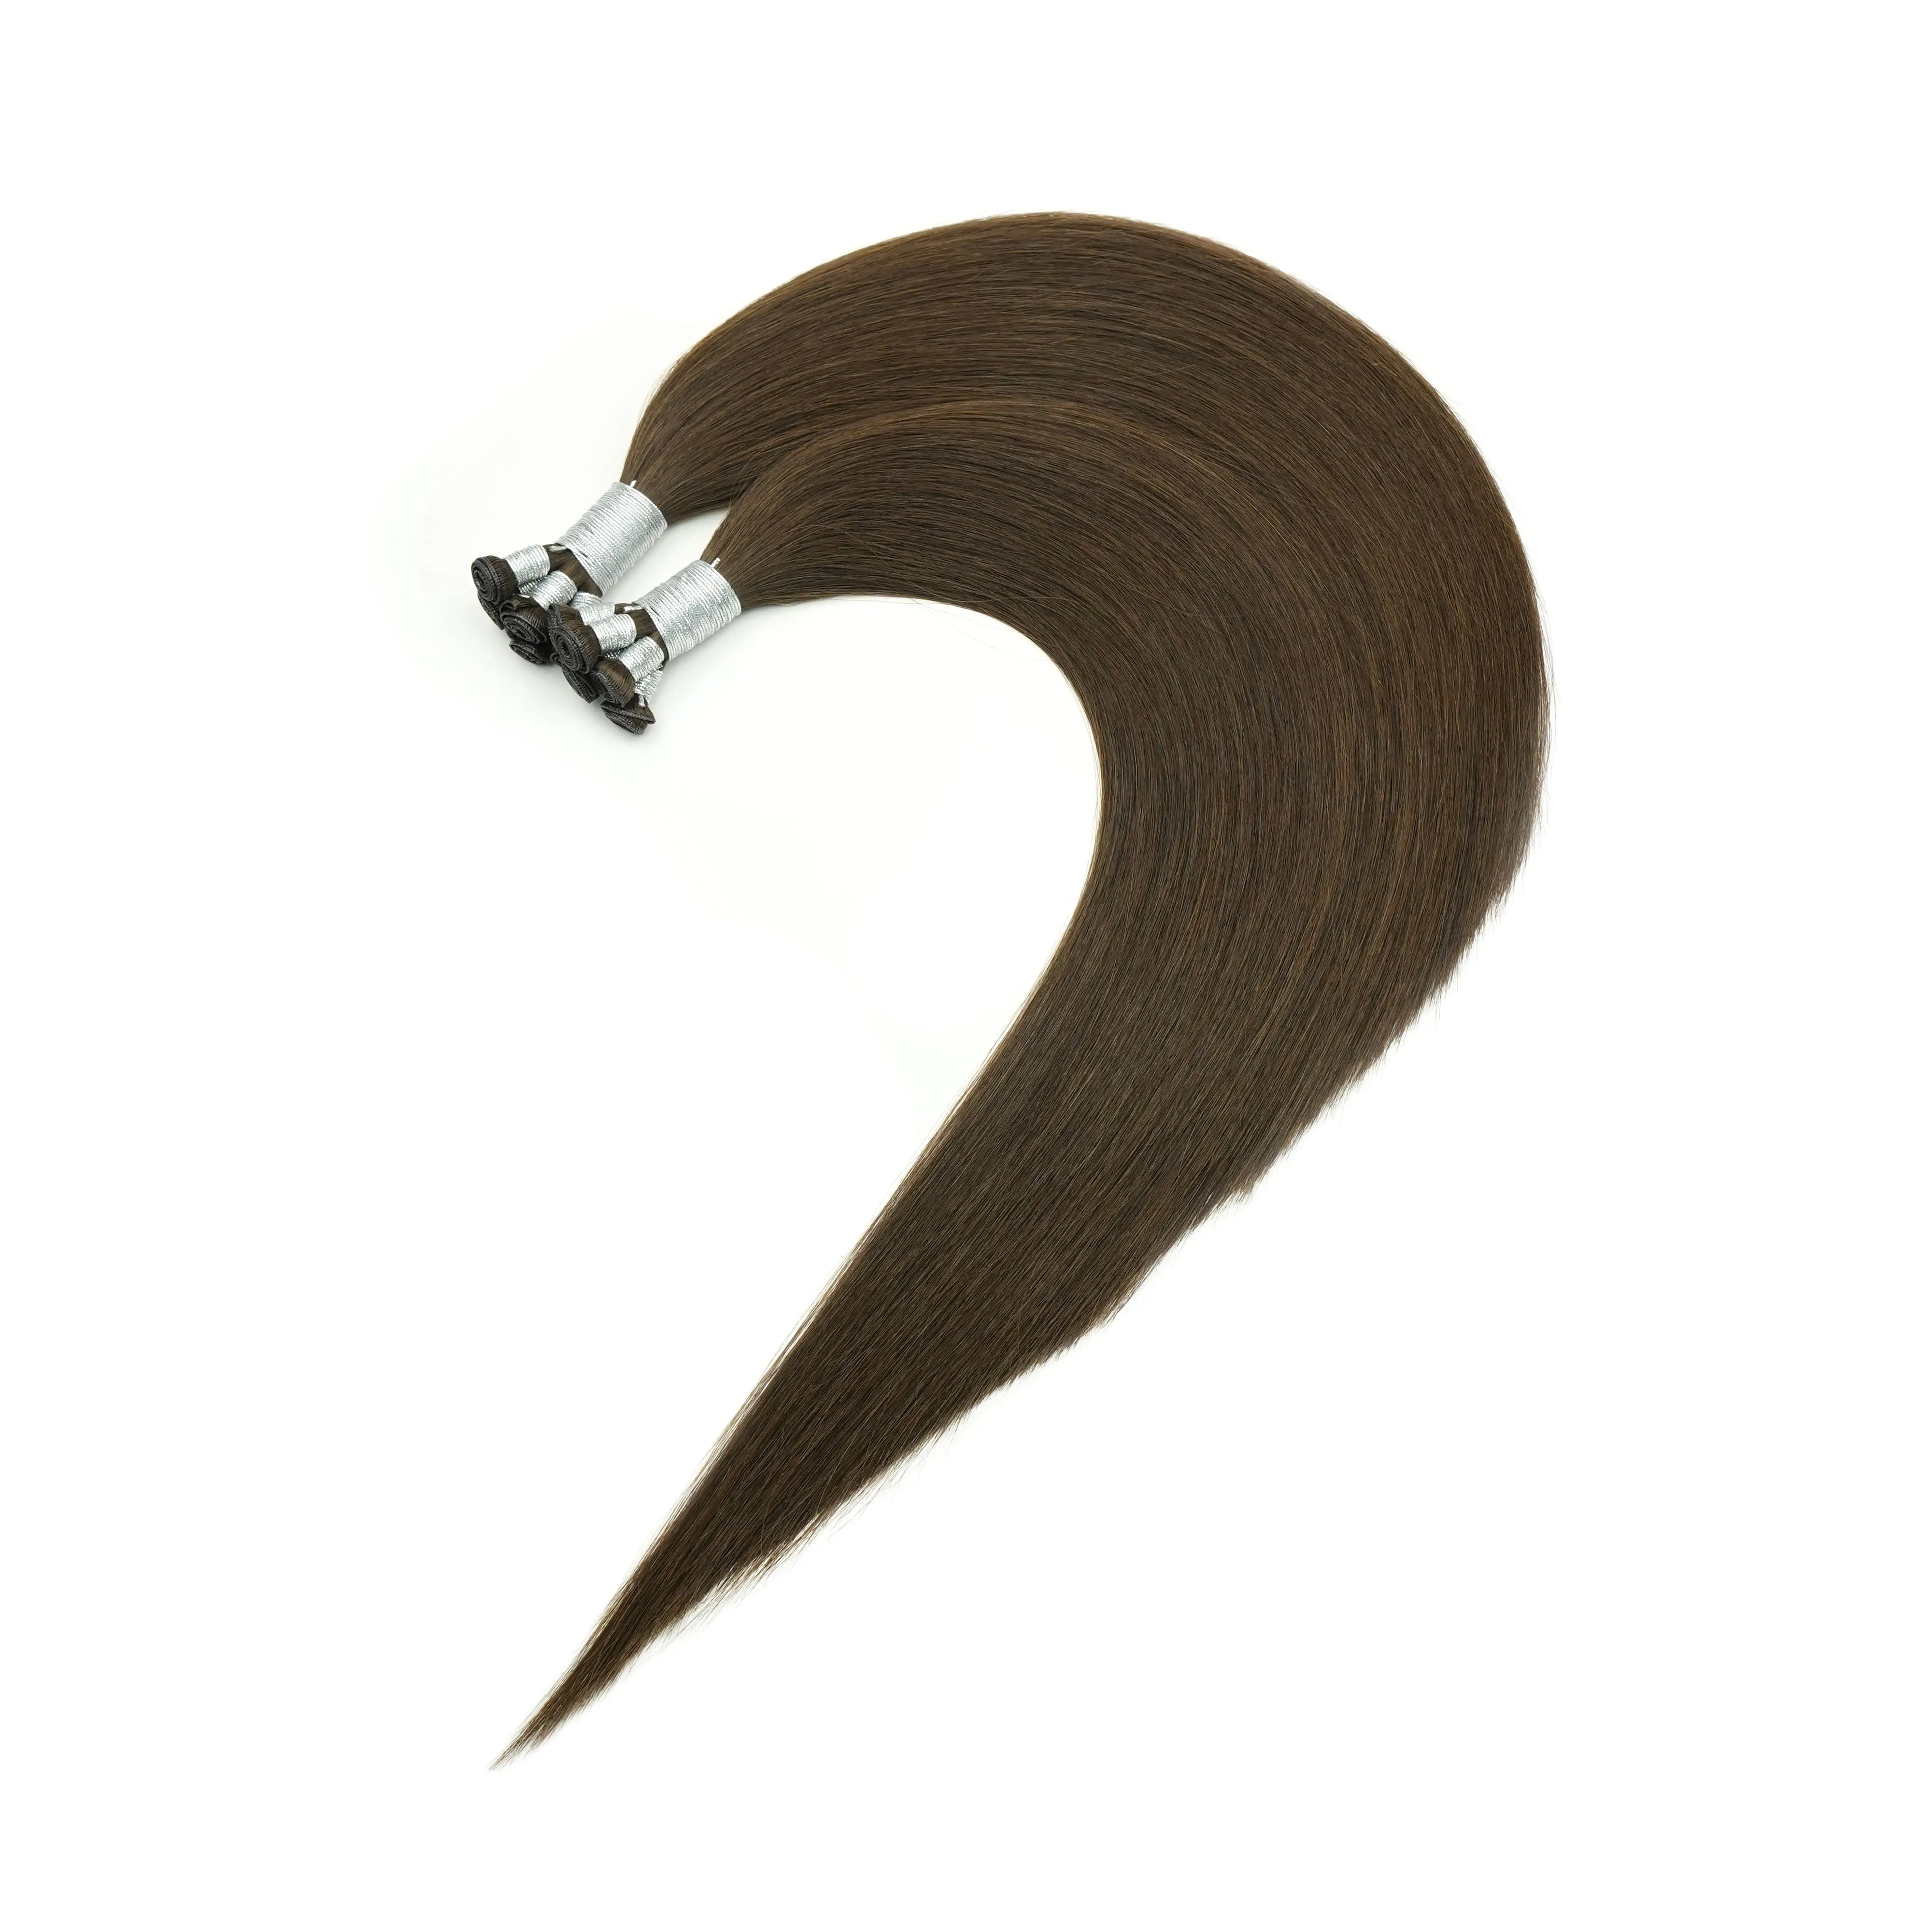 2024 cabello humano Natural de doble onda de alta calidad del Reino Unido suave y suave marrón profundo 100cm piel humana 100g cabello de punto de trama Genius